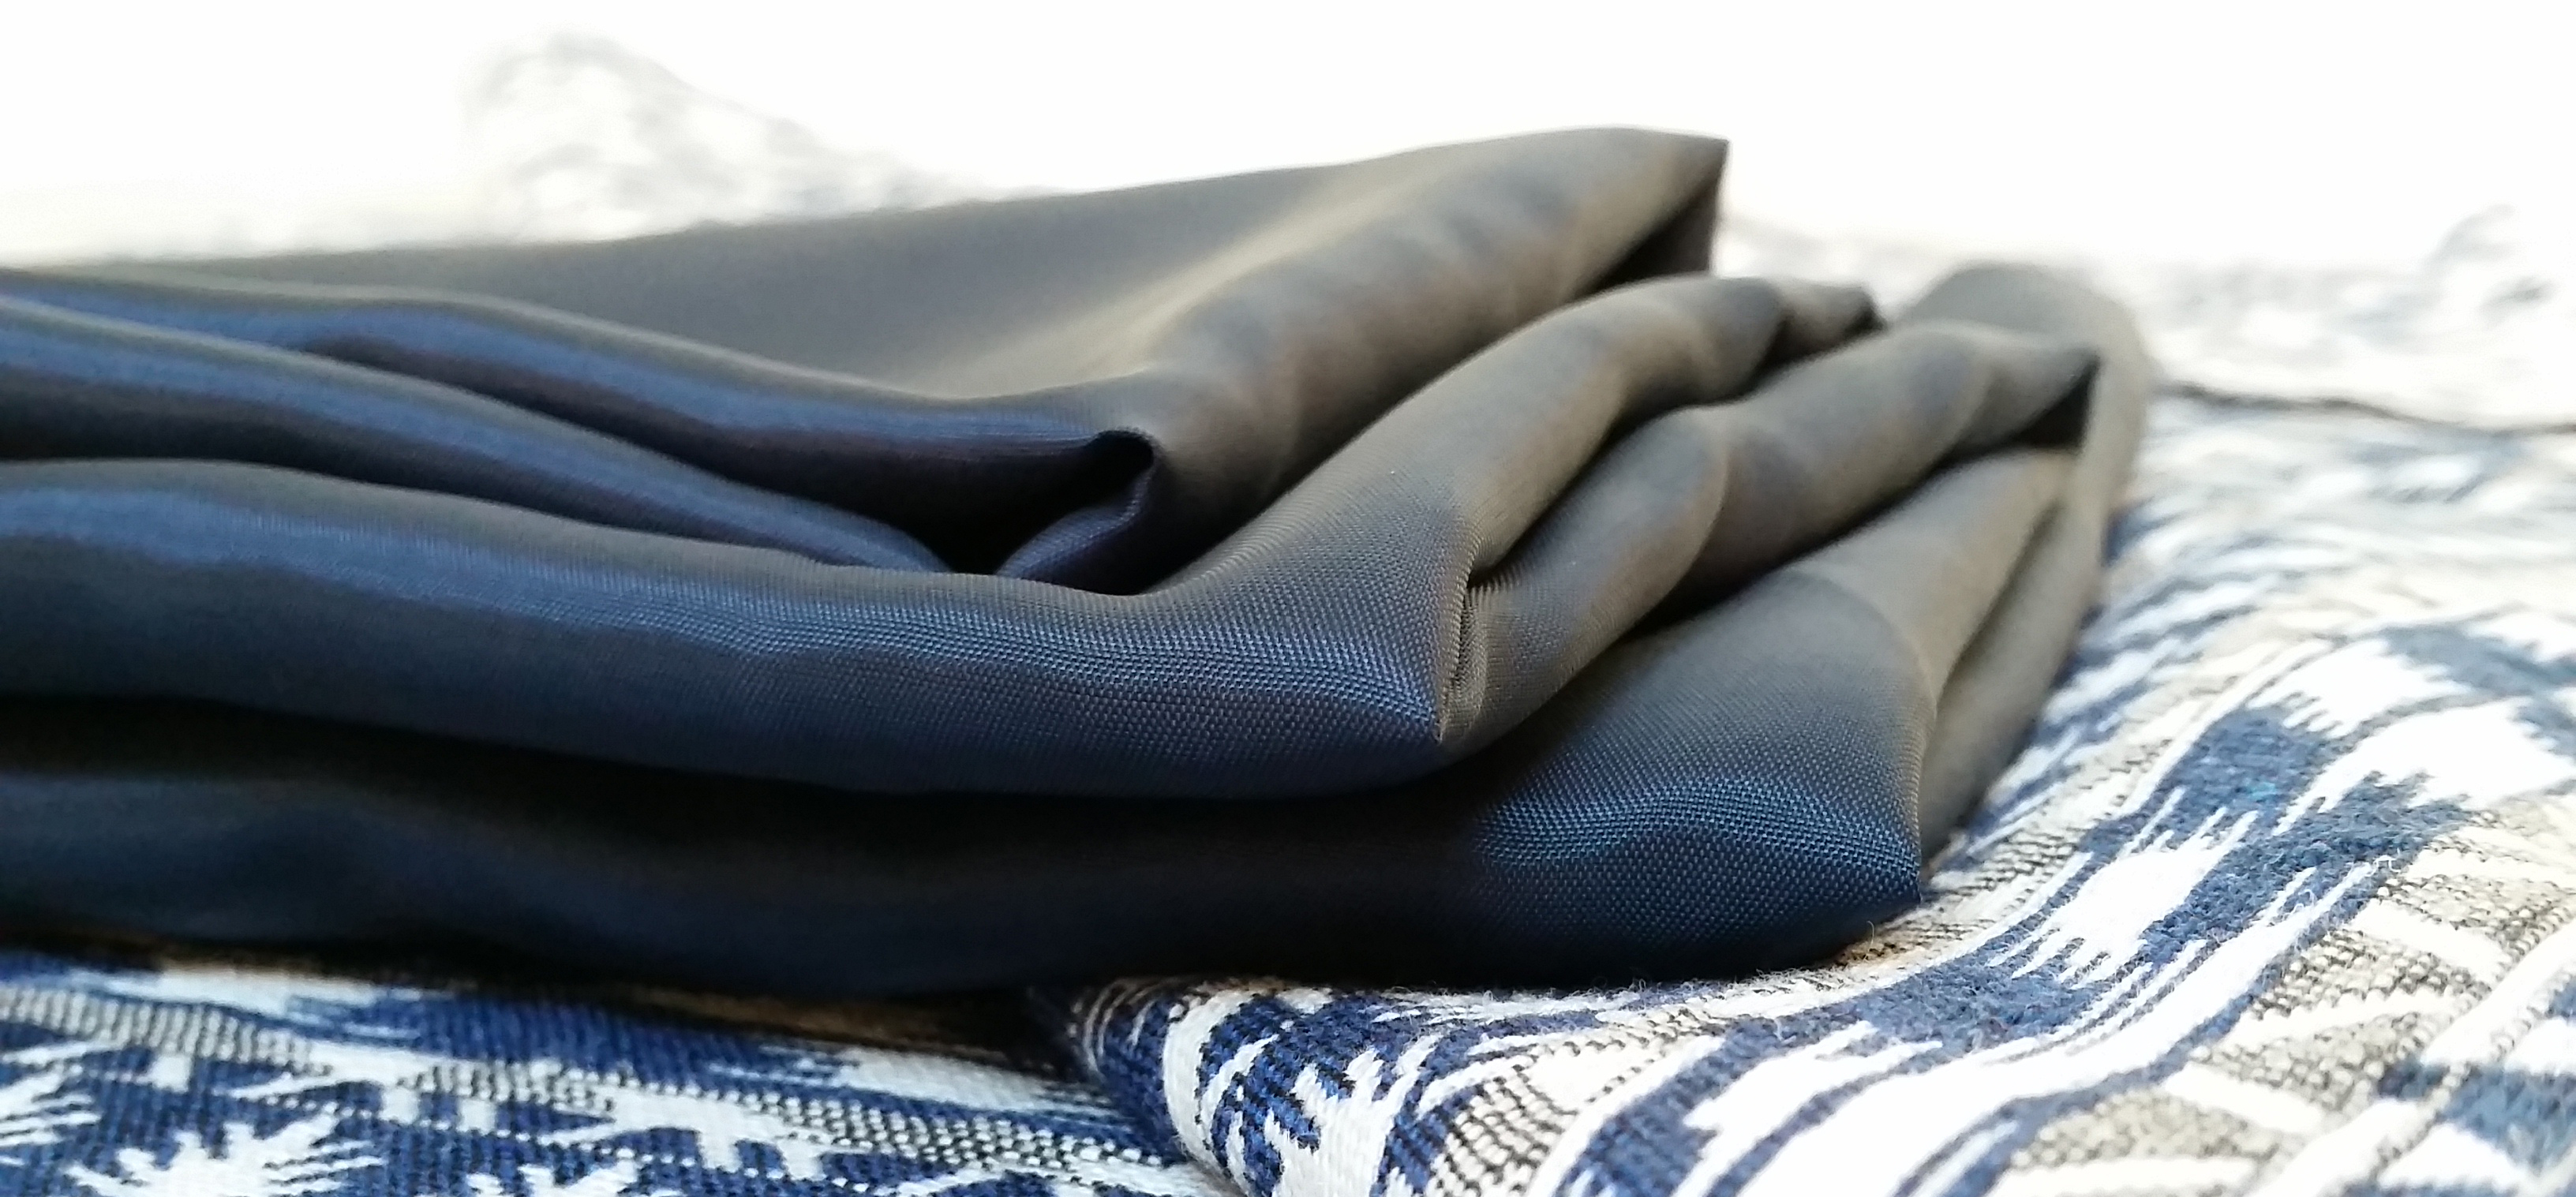 8 Baleine Kord épais Tissu Chiffon pour vêtements veste robe Rembourrage polyester